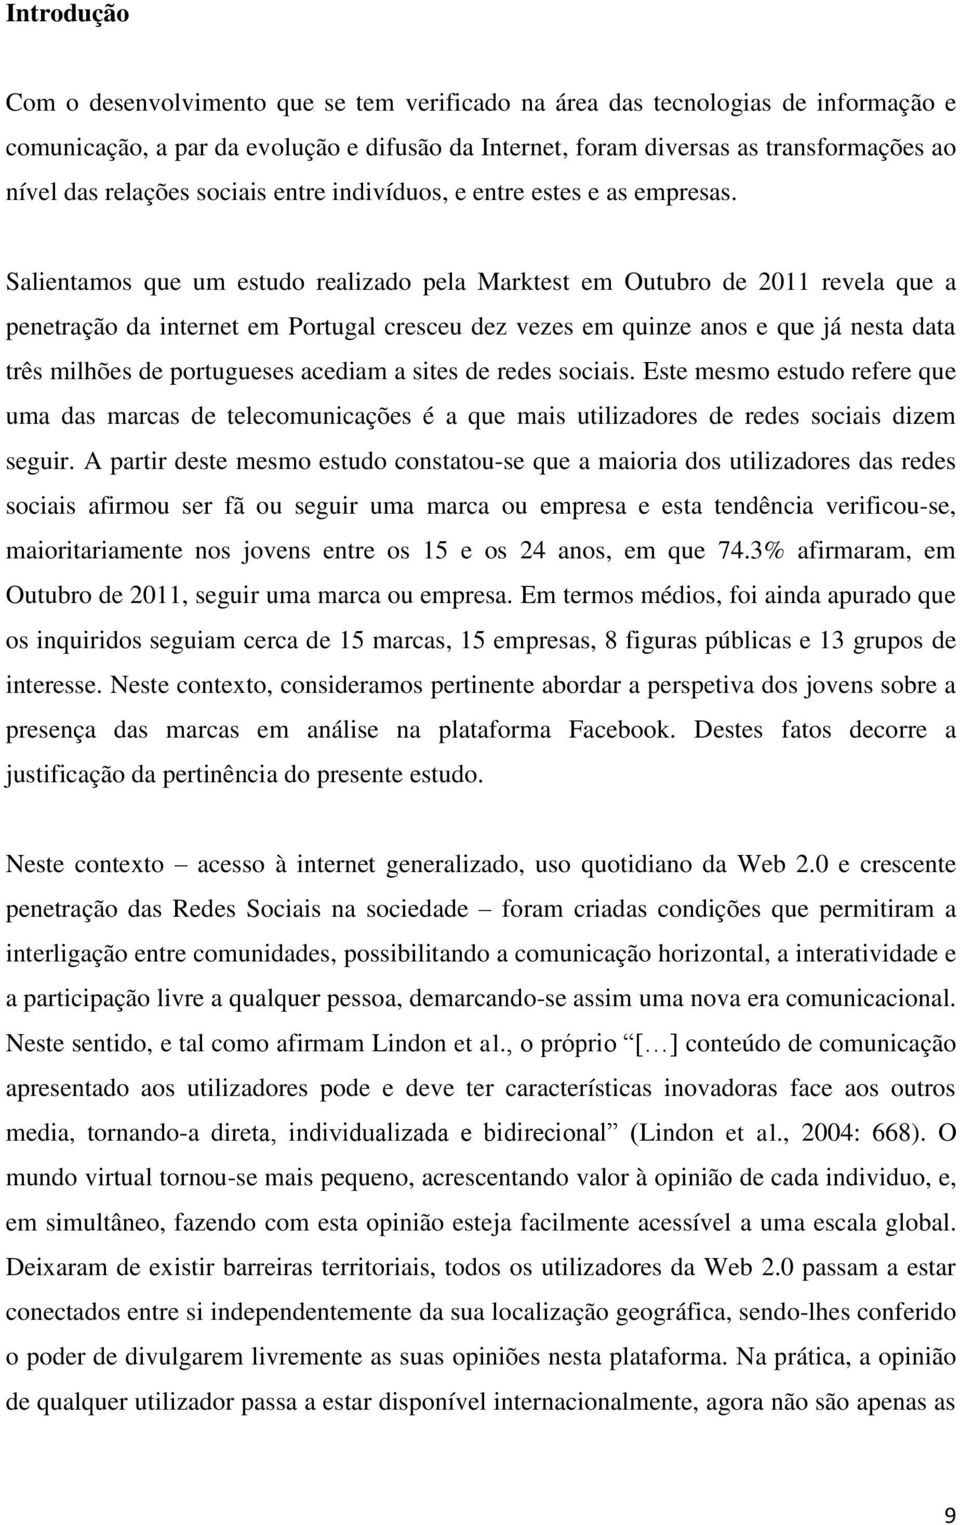 Salientamos que um estudo realizado pela Marktest em Outubro de 2011 revela que a penetração da internet em Portugal cresceu dez vezes em quinze anos e que já nesta data três milhões de portugueses